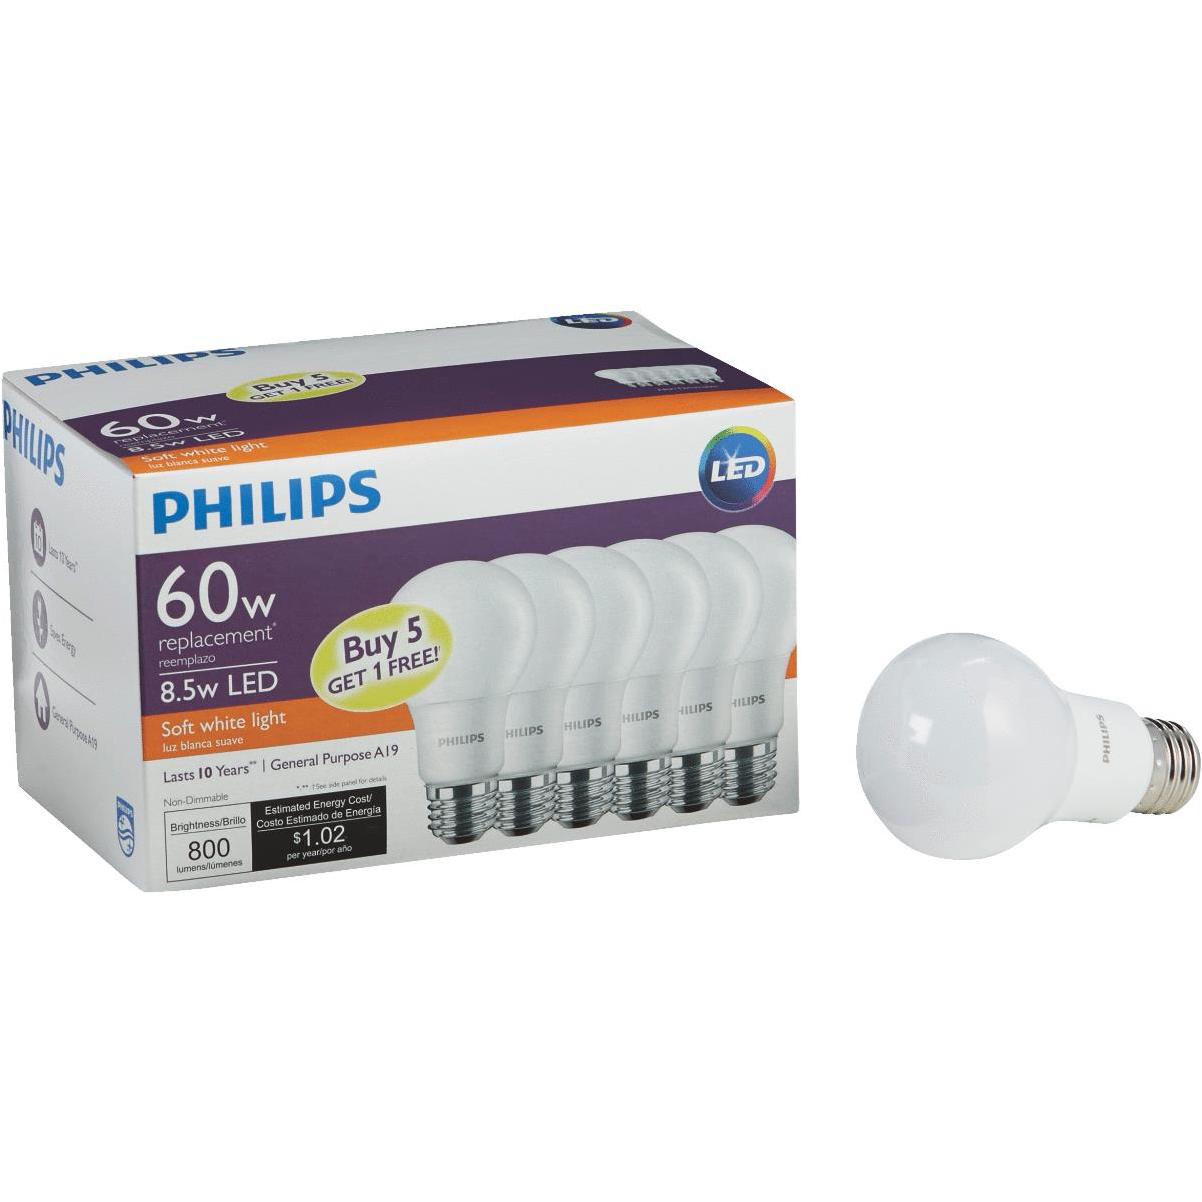 Philips Soft White 60w. Филипс 60 отзывы